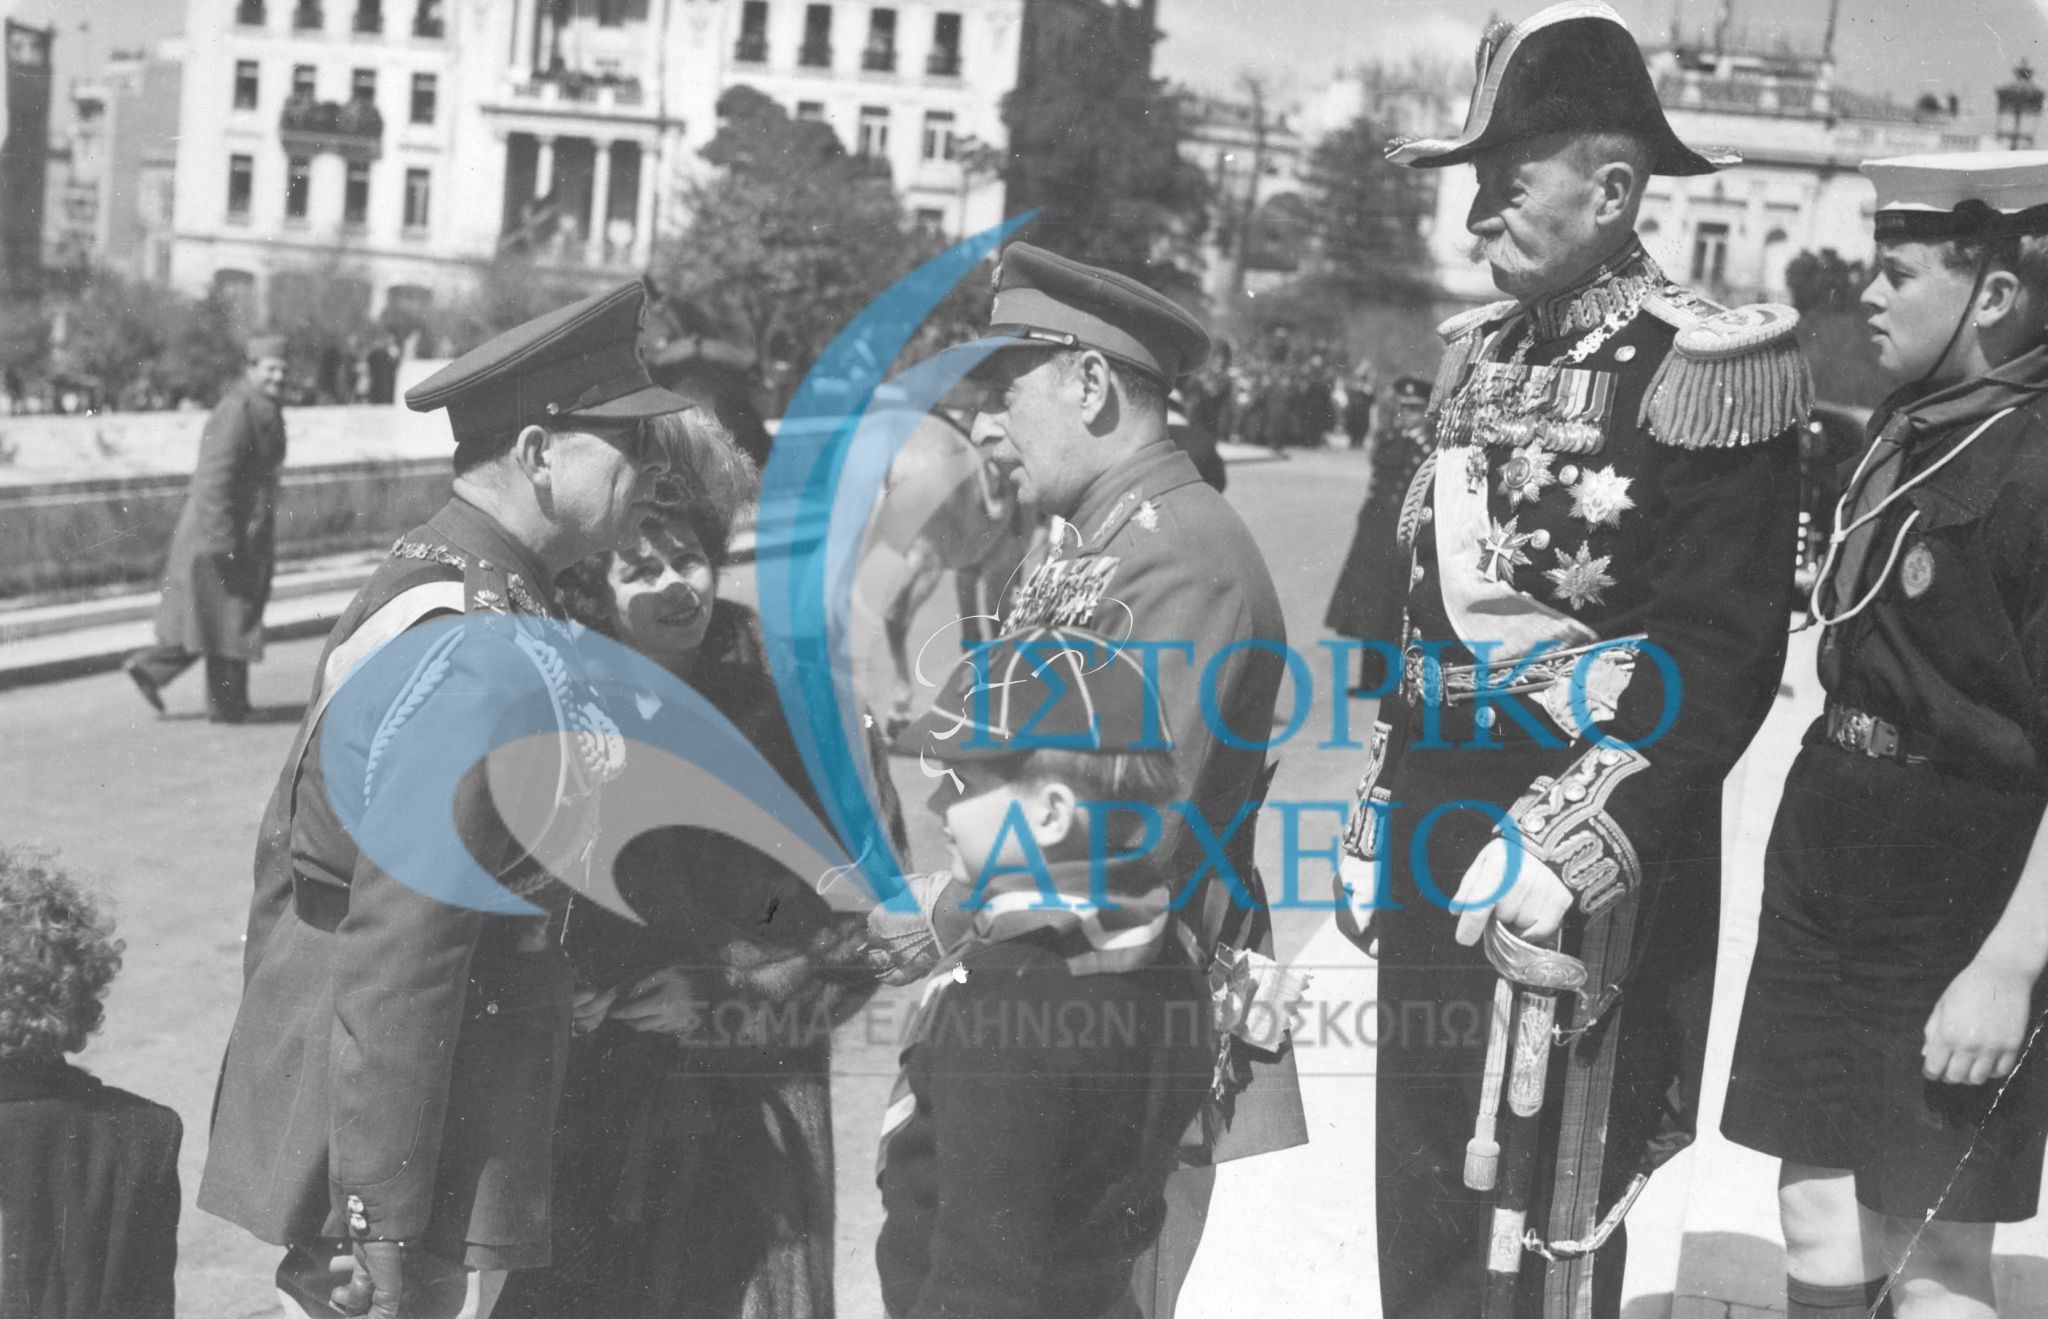 Ο Βασιλιάς Παύλος χαιρετάει τον Στρατάρχη Παπάγου λίγο πριν τη παρέλαση της 25ης Μαρτίου του 1949. Δίπλα του ο Διάδοχος Κωνσταντίνος με στολή λυκόπουλου. Πλησίον παρακολουθεί ο πρίγκιππας Ανδρέας με τον εγγονό του ναυτοπρόσκοπο Αριγένη Κάρολο.